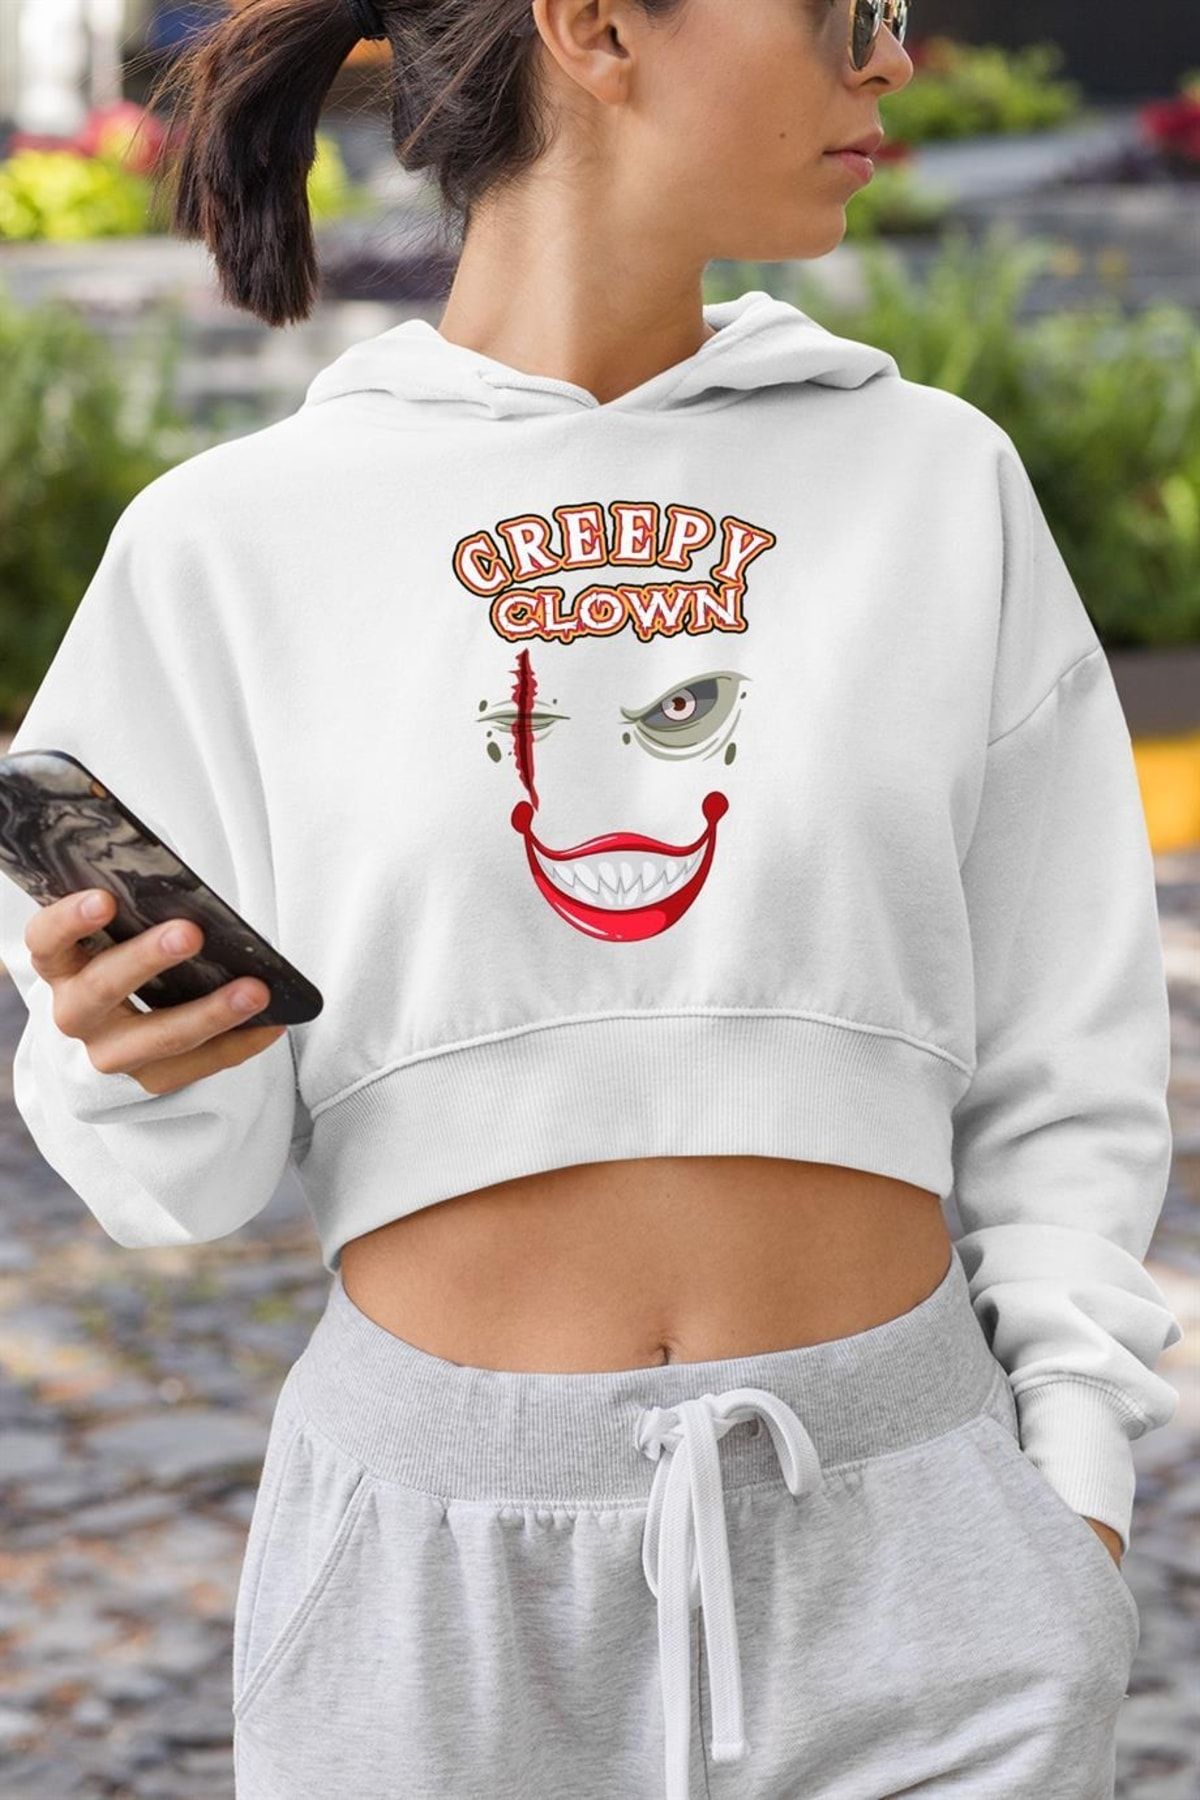 Demal Tekstil Creepy Clown Crop Hoodie Kapüşonlu Sweatshirt Beyaz